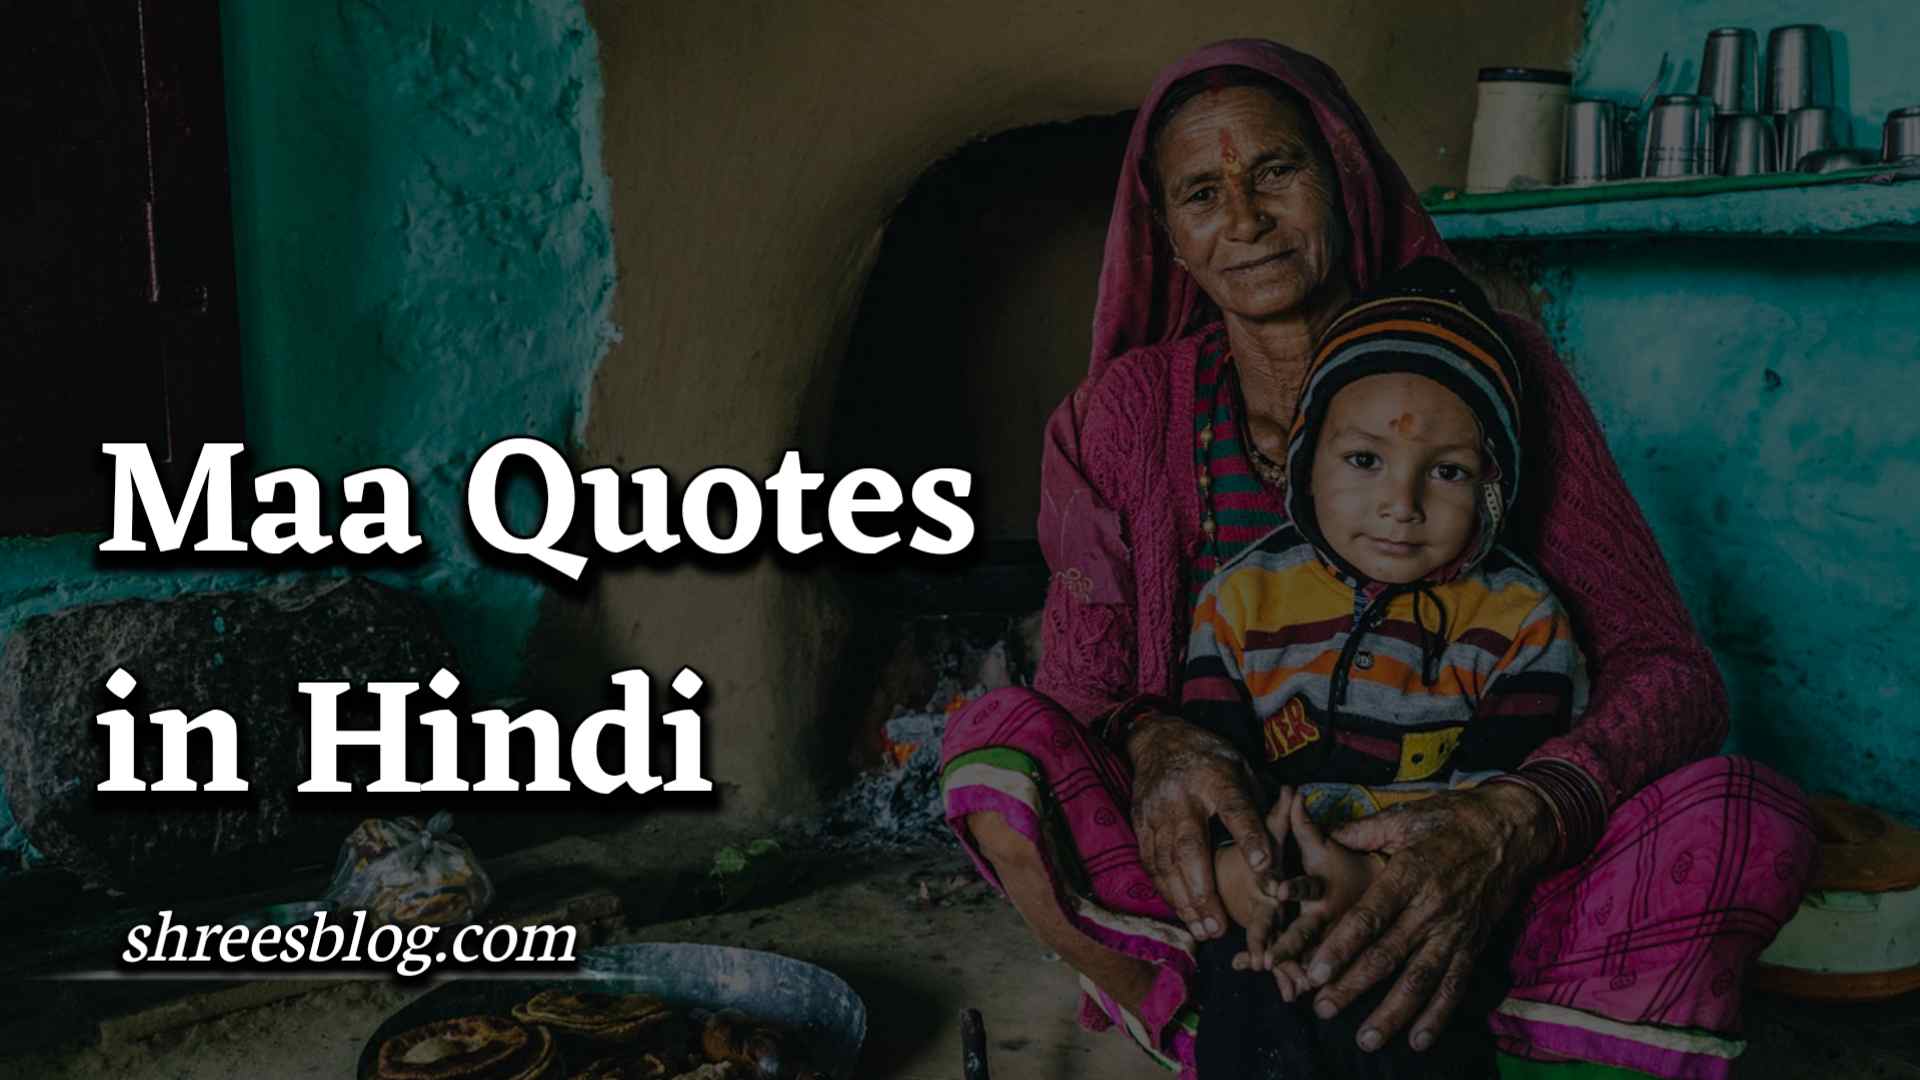 Maa Quotes in Hindi